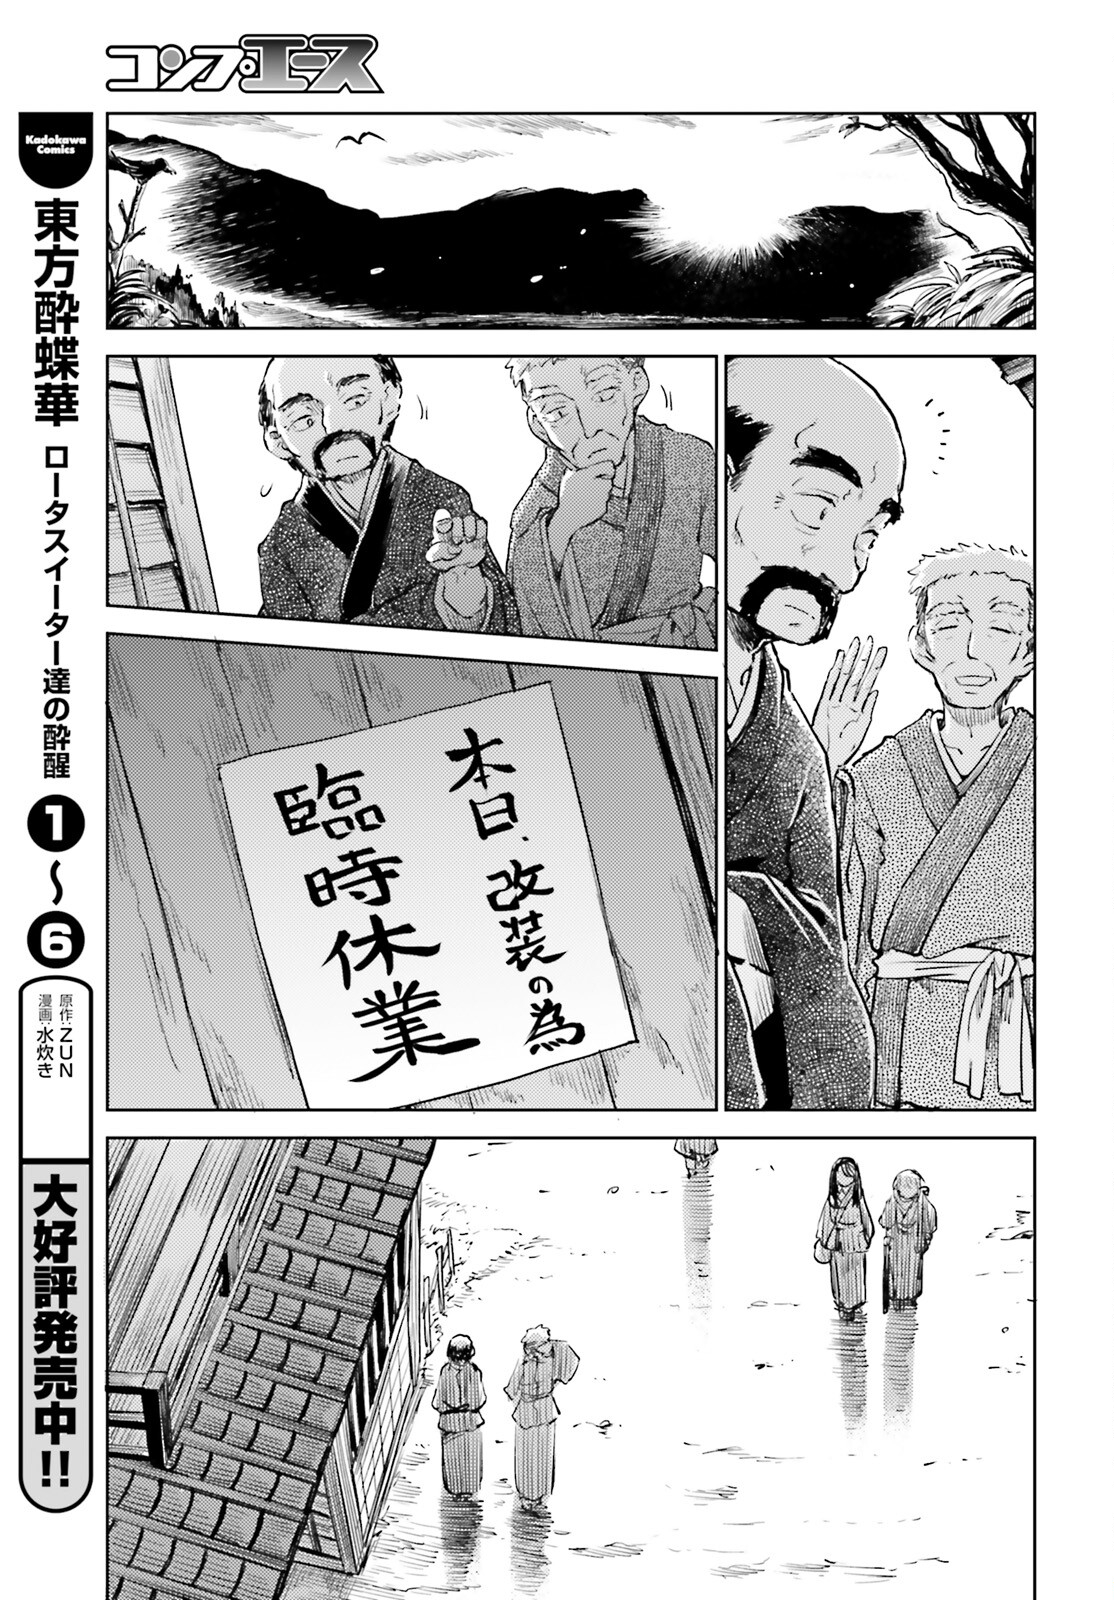 東方酔蝶華ロータスイーター達の酔醒 第53話 - Page 3